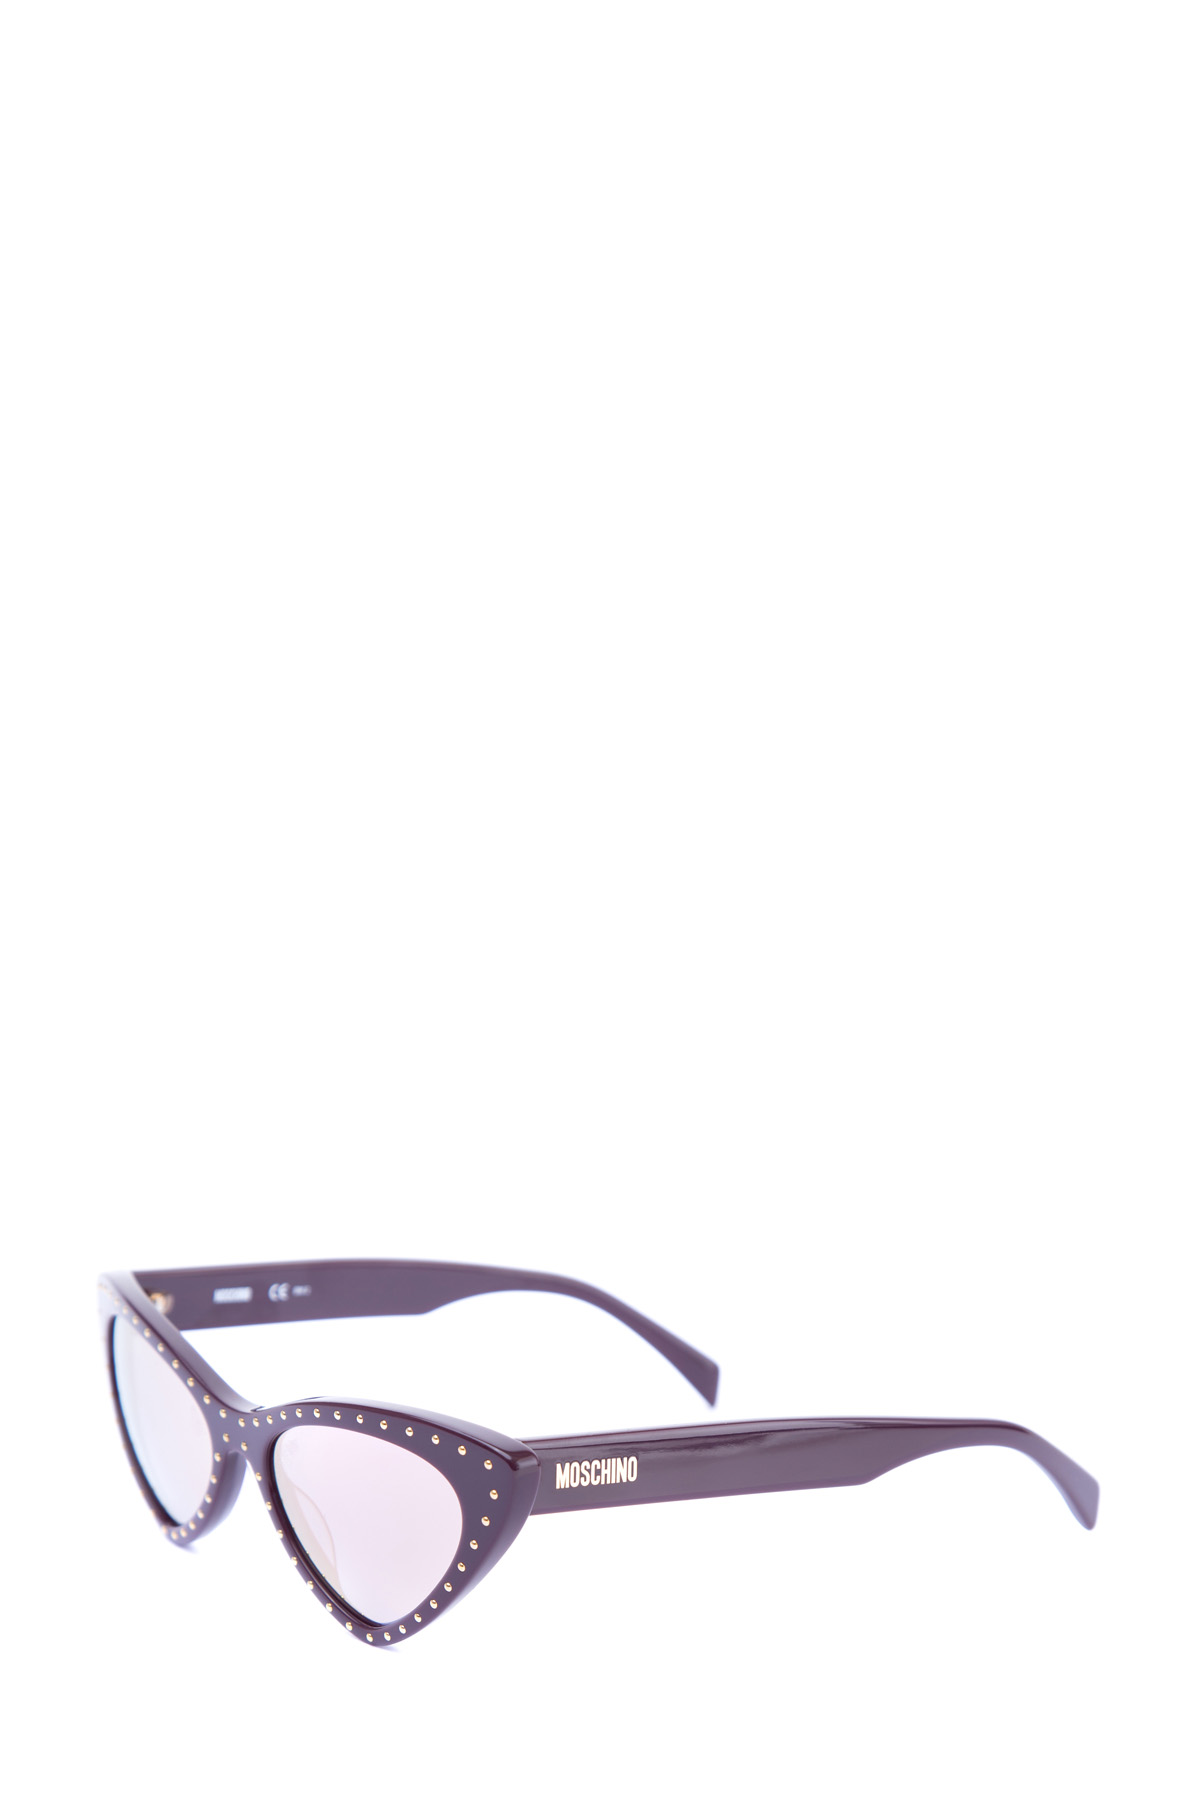 Очки в изящной оправе Cat Eye из глянцевого пластика вишневого цвета MOSCHINO (sunglasses), размер 46 - фото 3